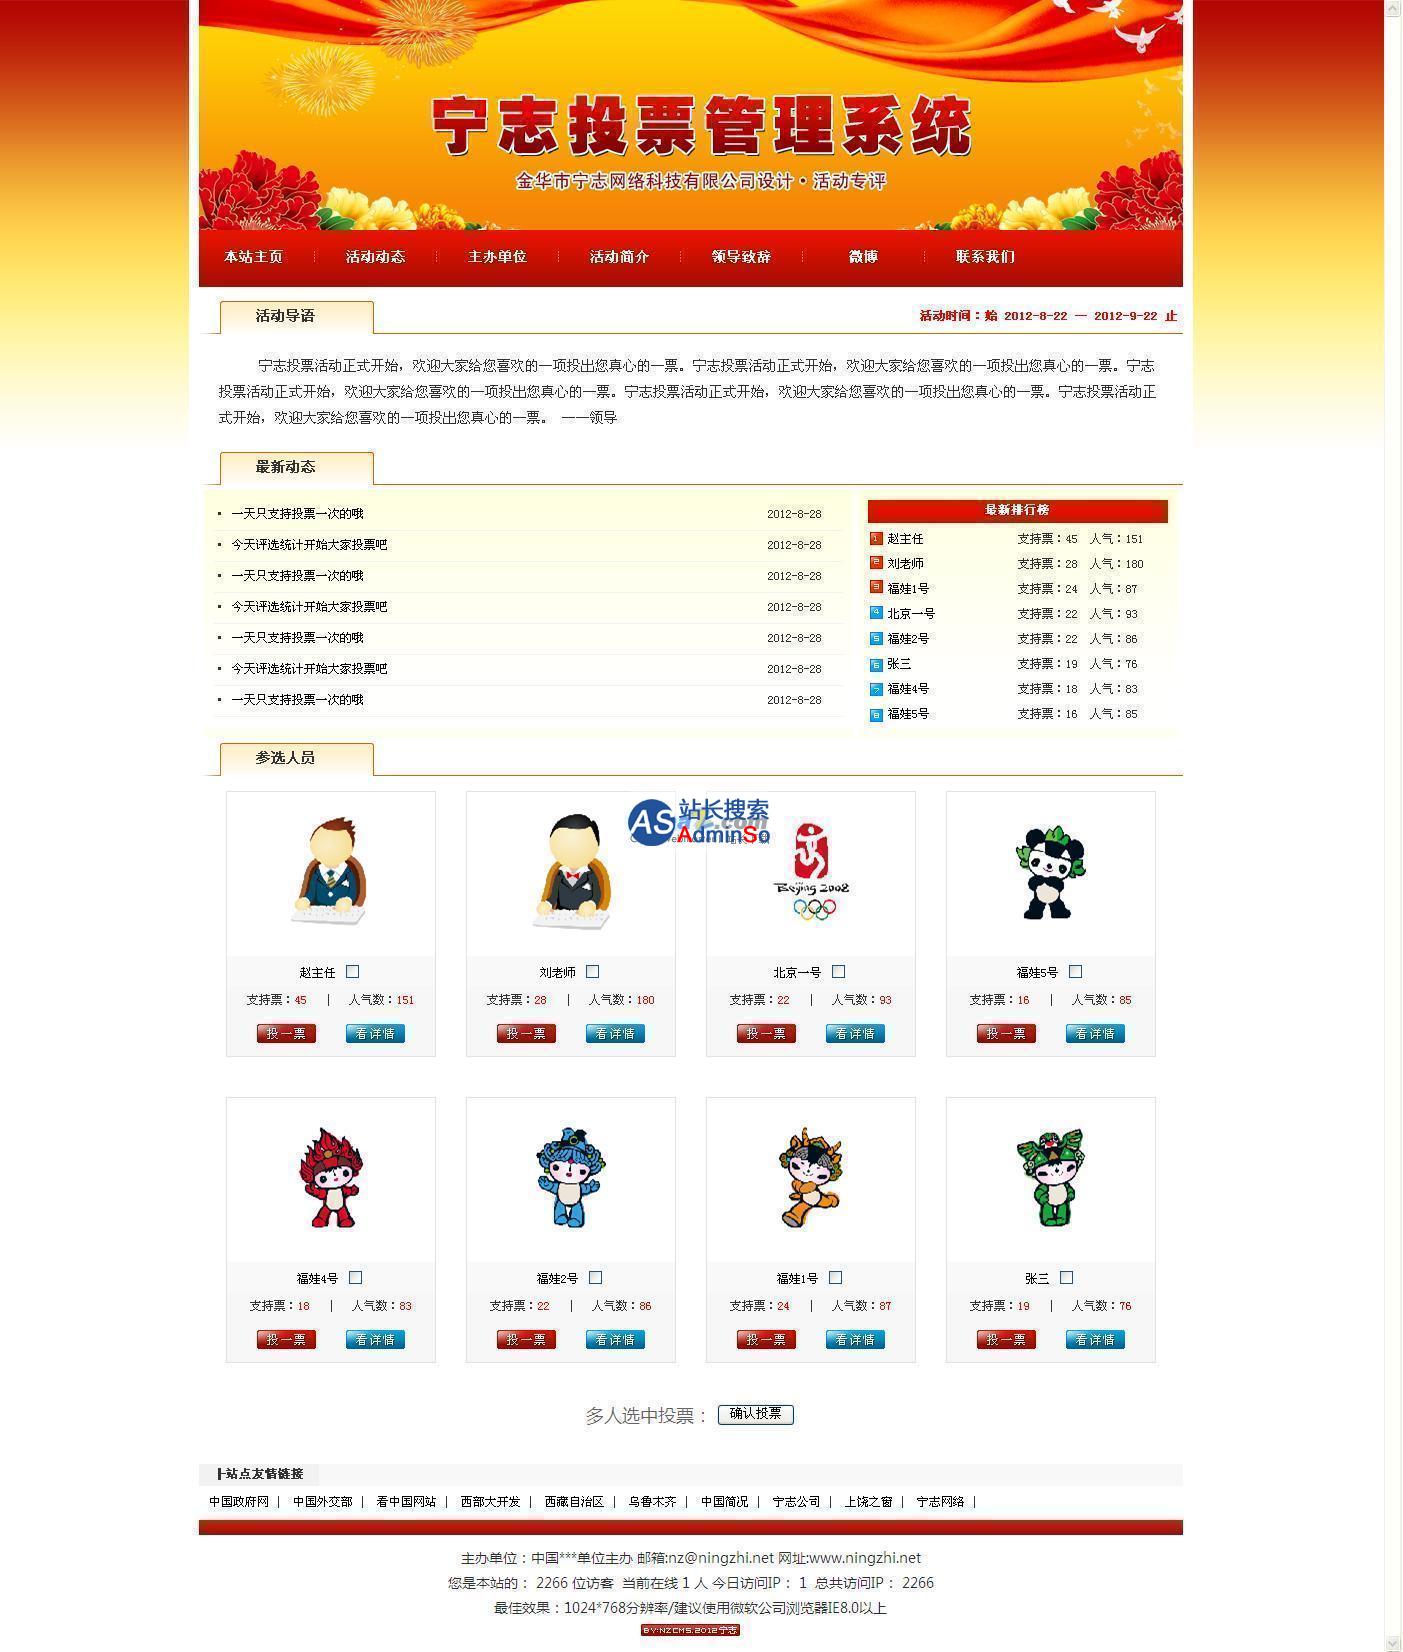 宁志投票评选网站管理系统 演示图片